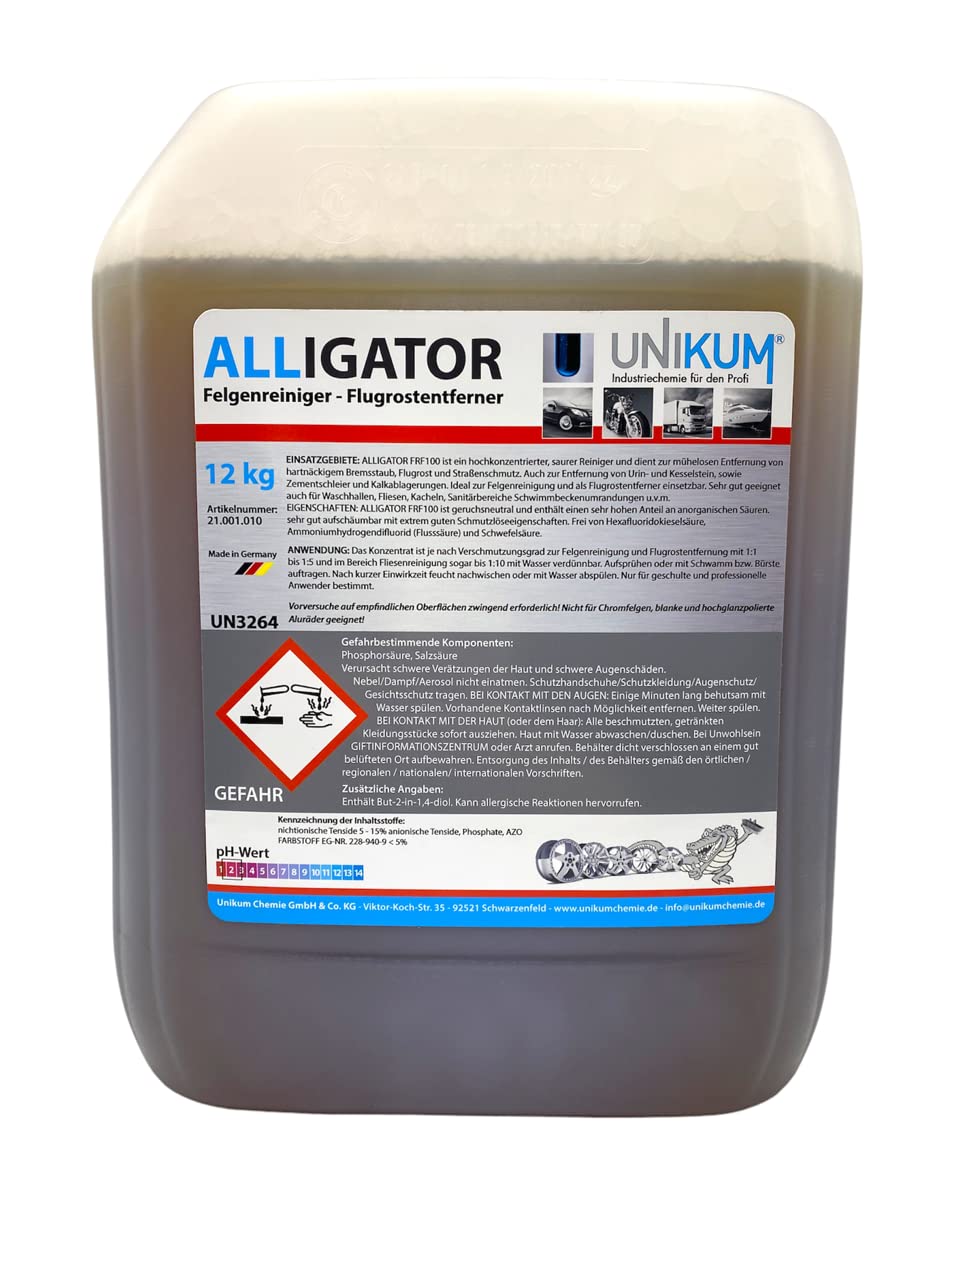 Unikum Alligator Felgenreiniger – Flugrostentferner 12kg von Unikum Chemie